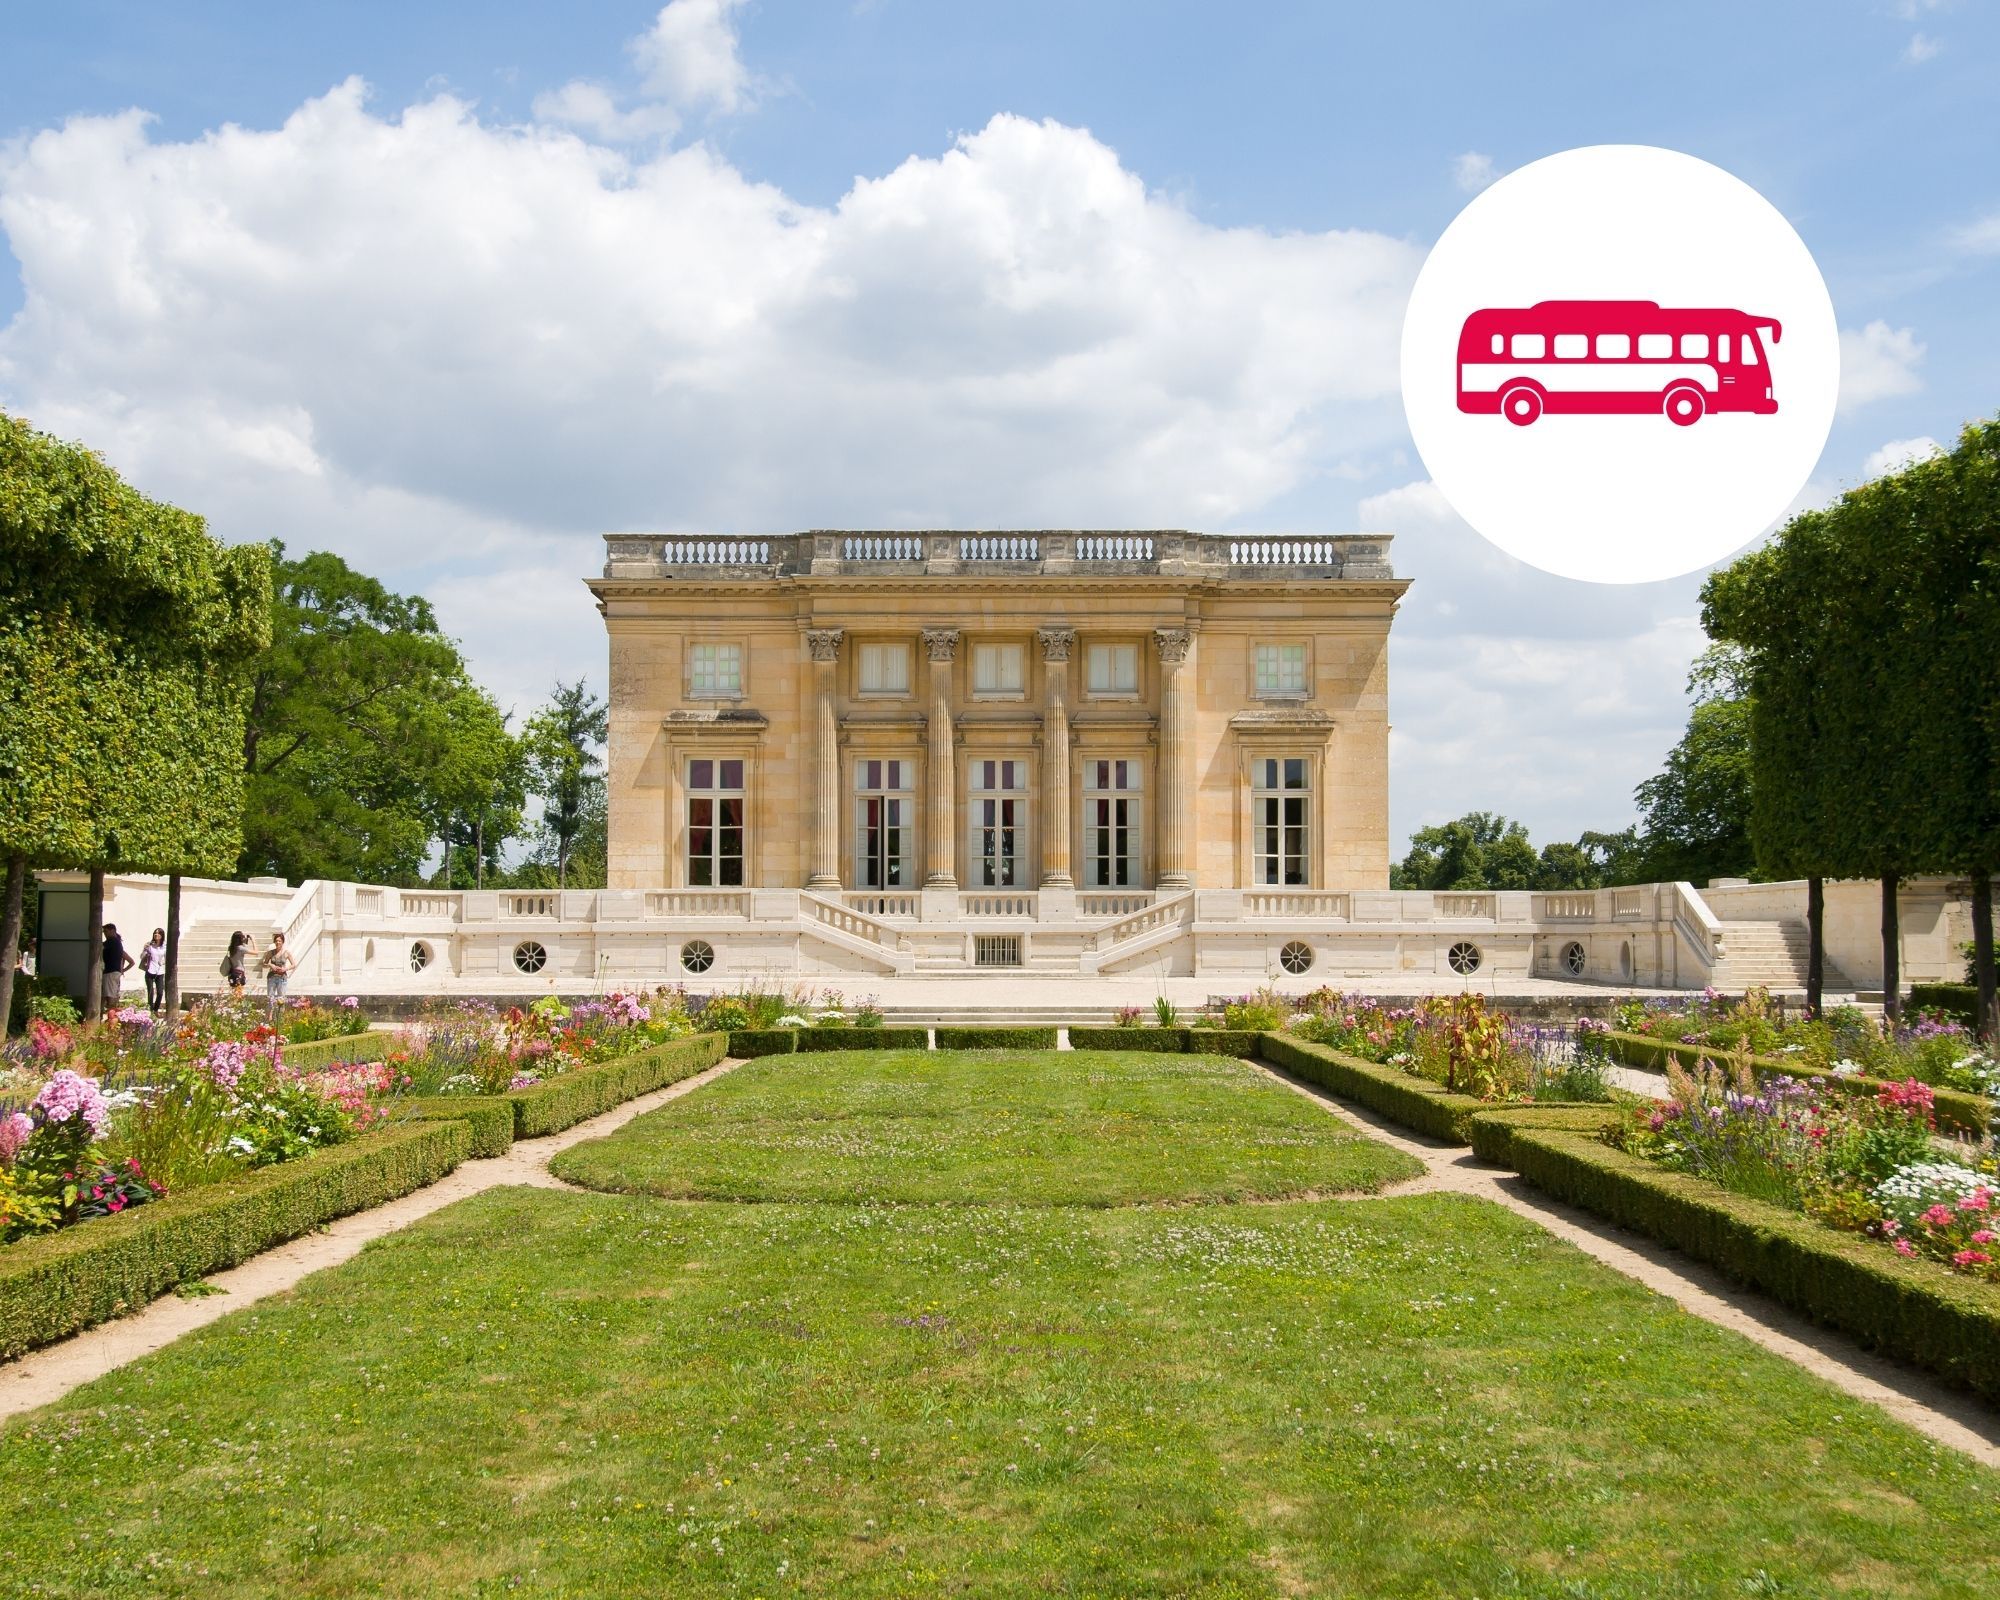 Audioguide-Besichtigung des Schlosses Versailles und Zugang zu der gesamten Domäne